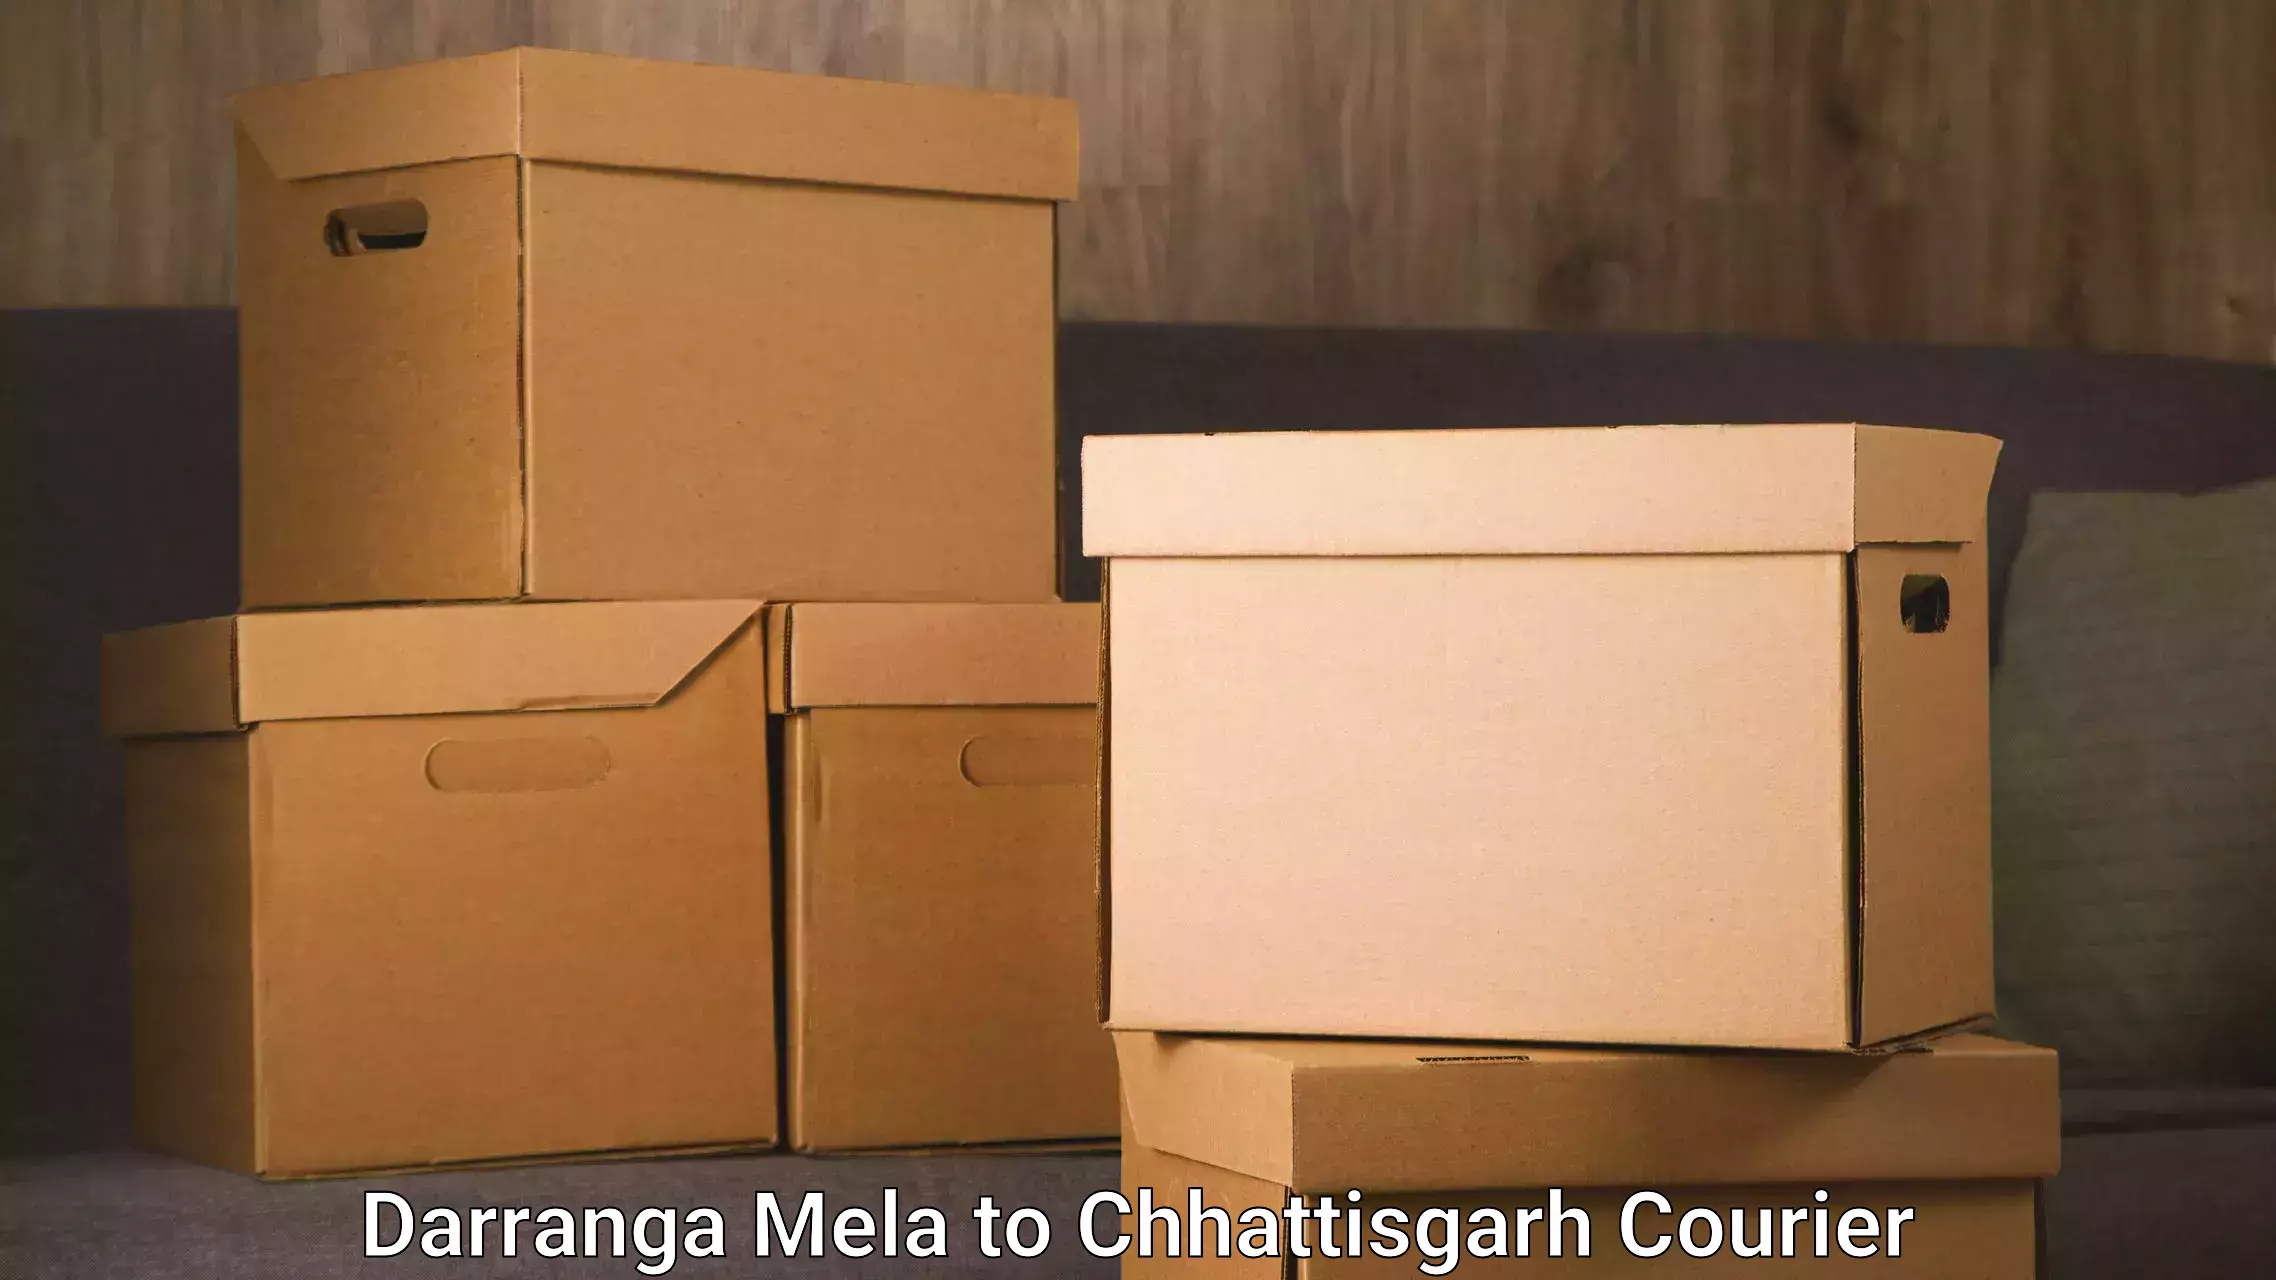 Local delivery service in Darranga Mela to Chhattisgarh